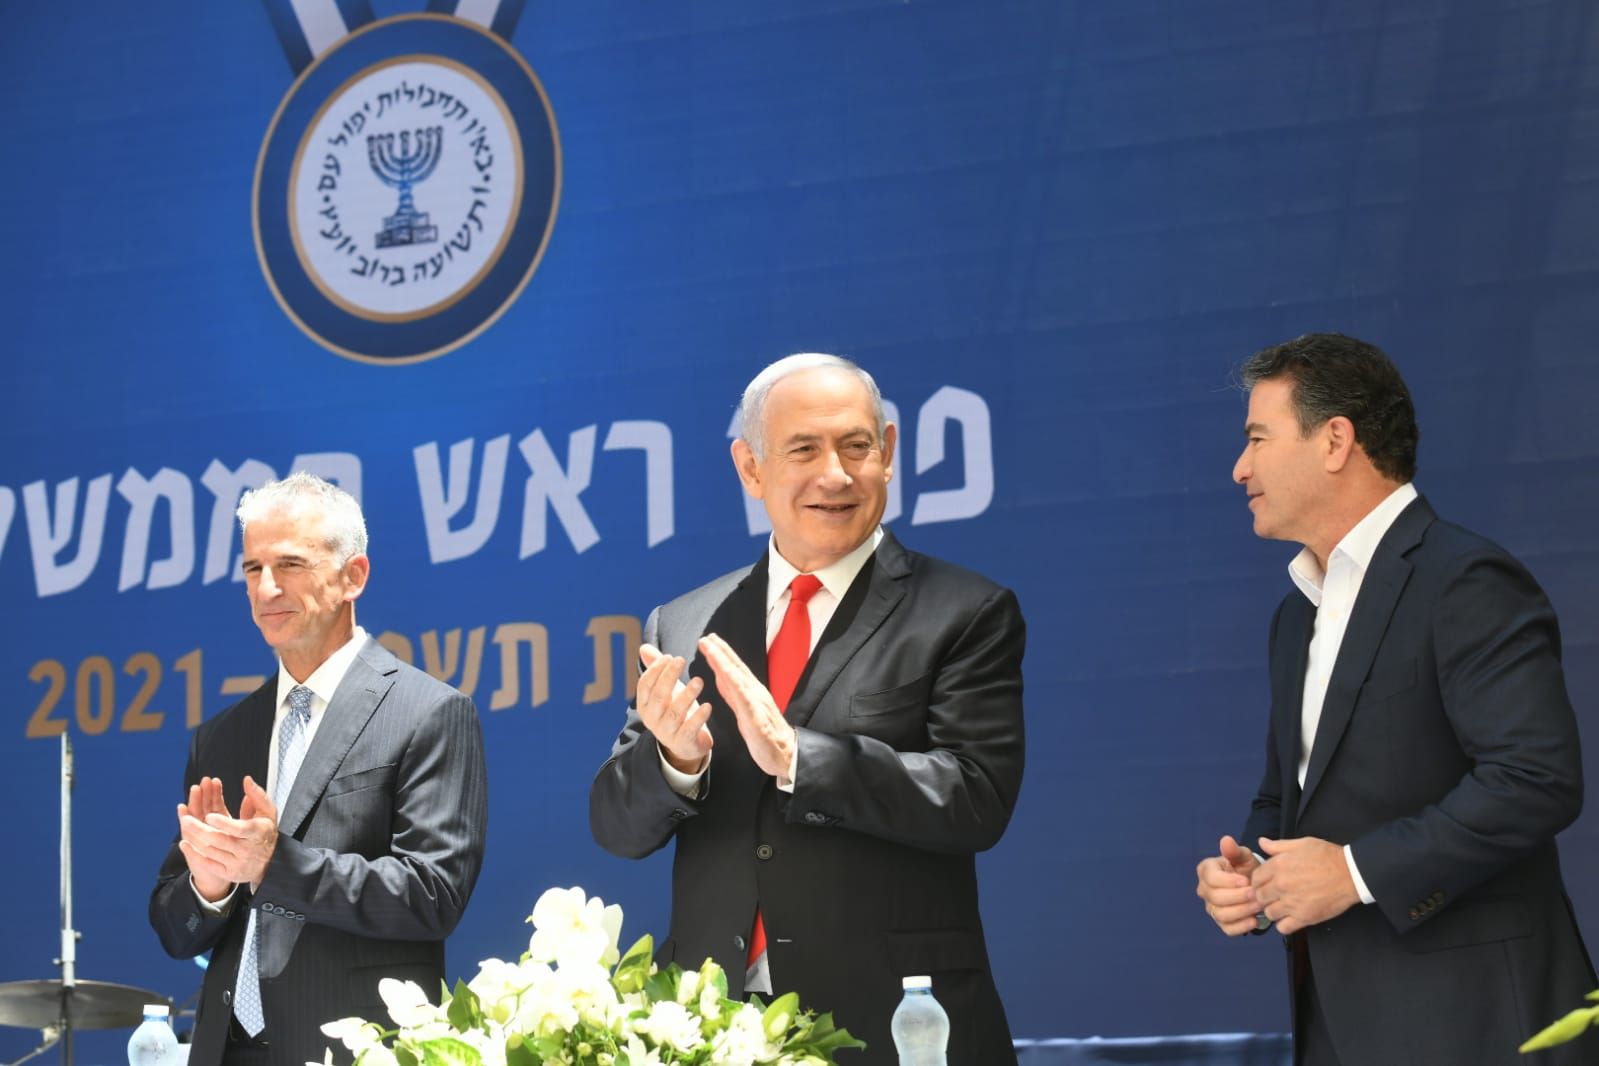 رئيس الوزراء الإسرائيلي السابق بنيامين نتنياهو متوسّطاً الرئيس السابق للموساد يوسي كوهين (يمين) وخلفه ديفيد برنياع - Twitter/@guyelster